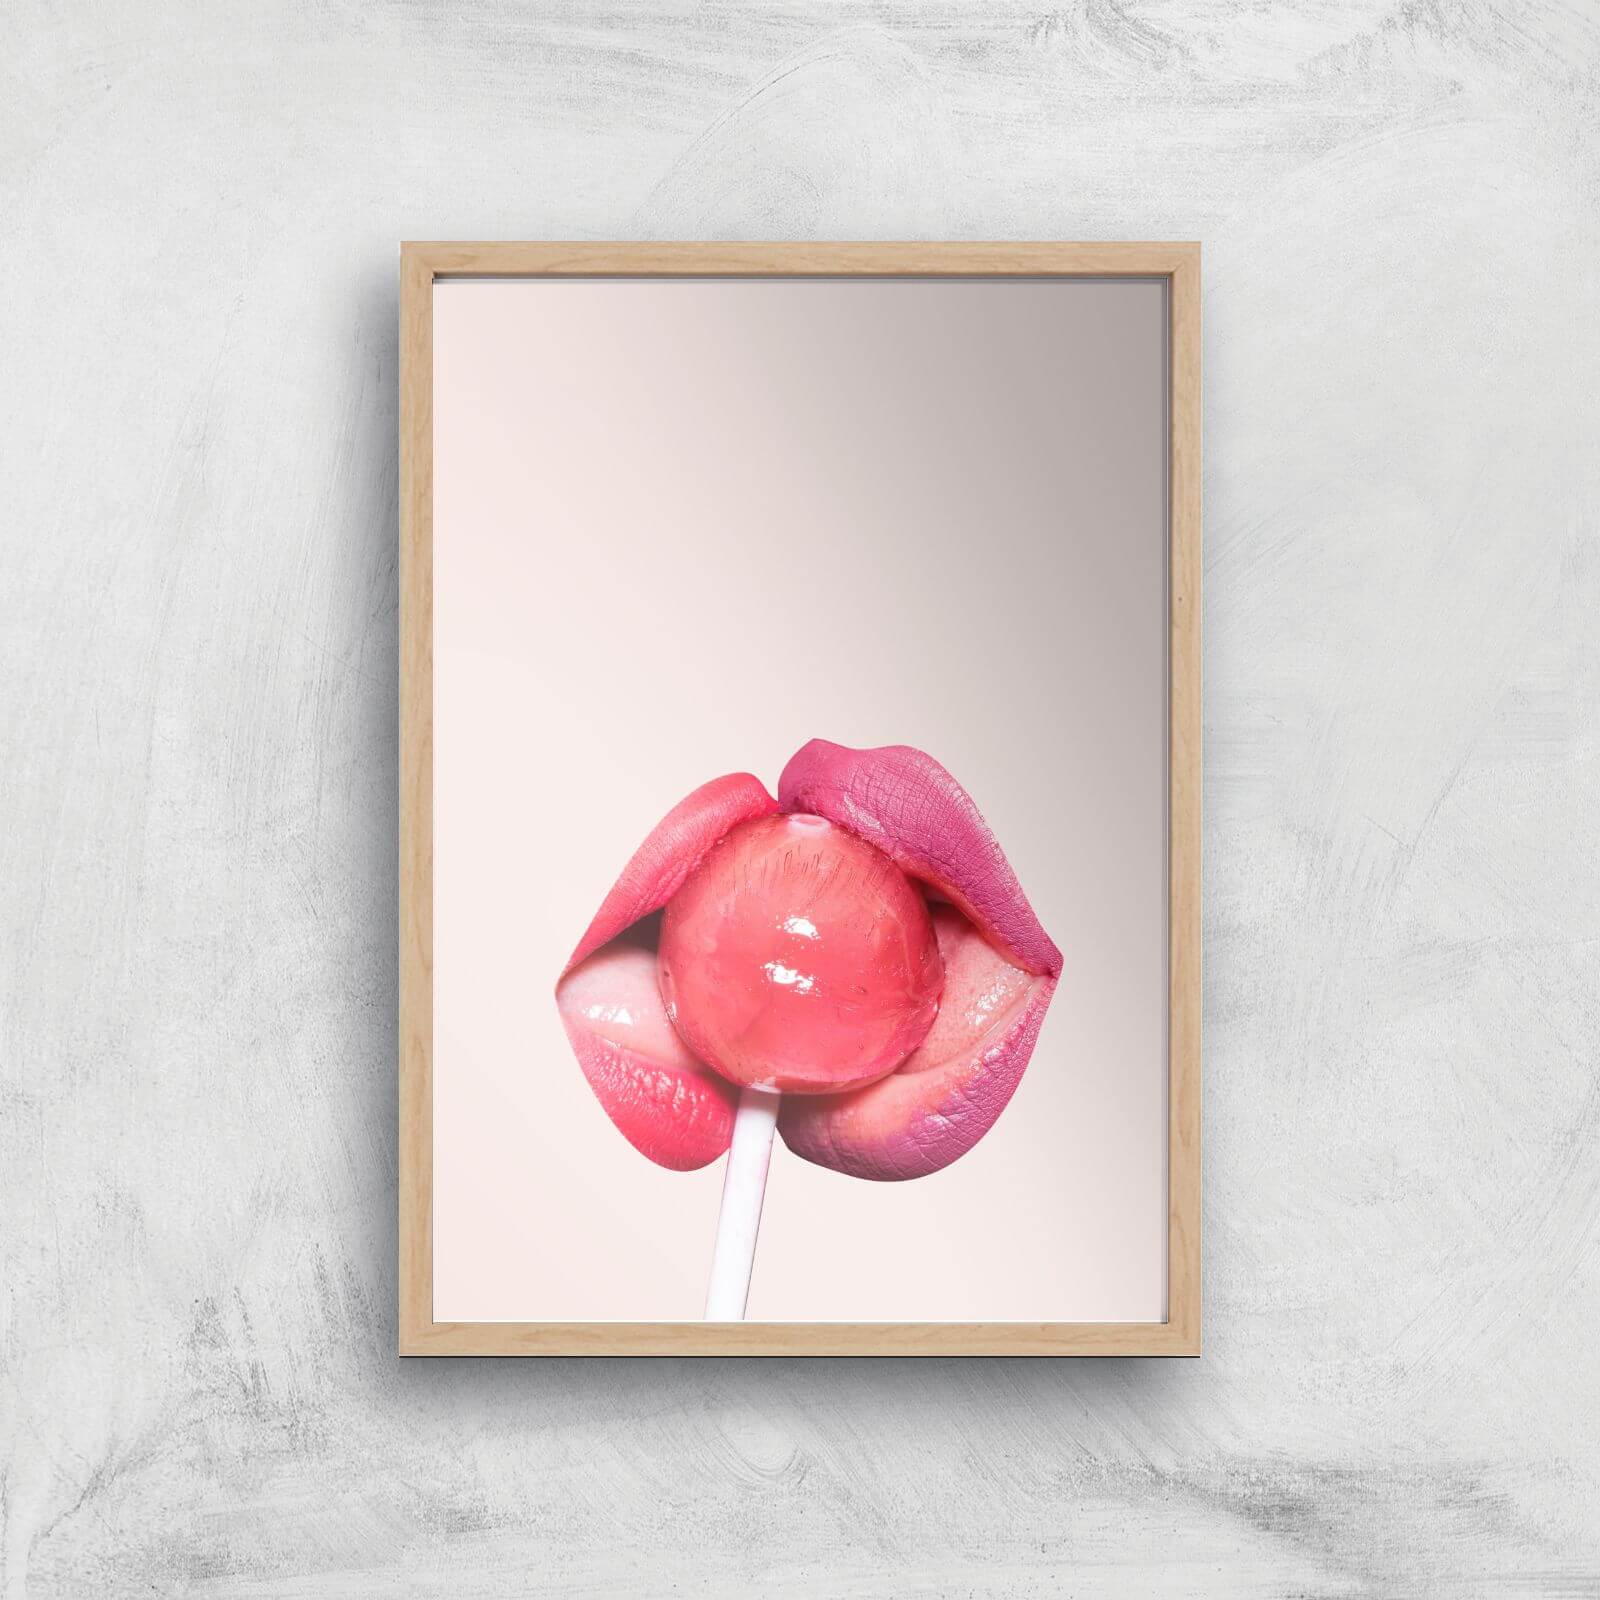 Lollipop Giclee Art Print - A3 - Wooden Frame